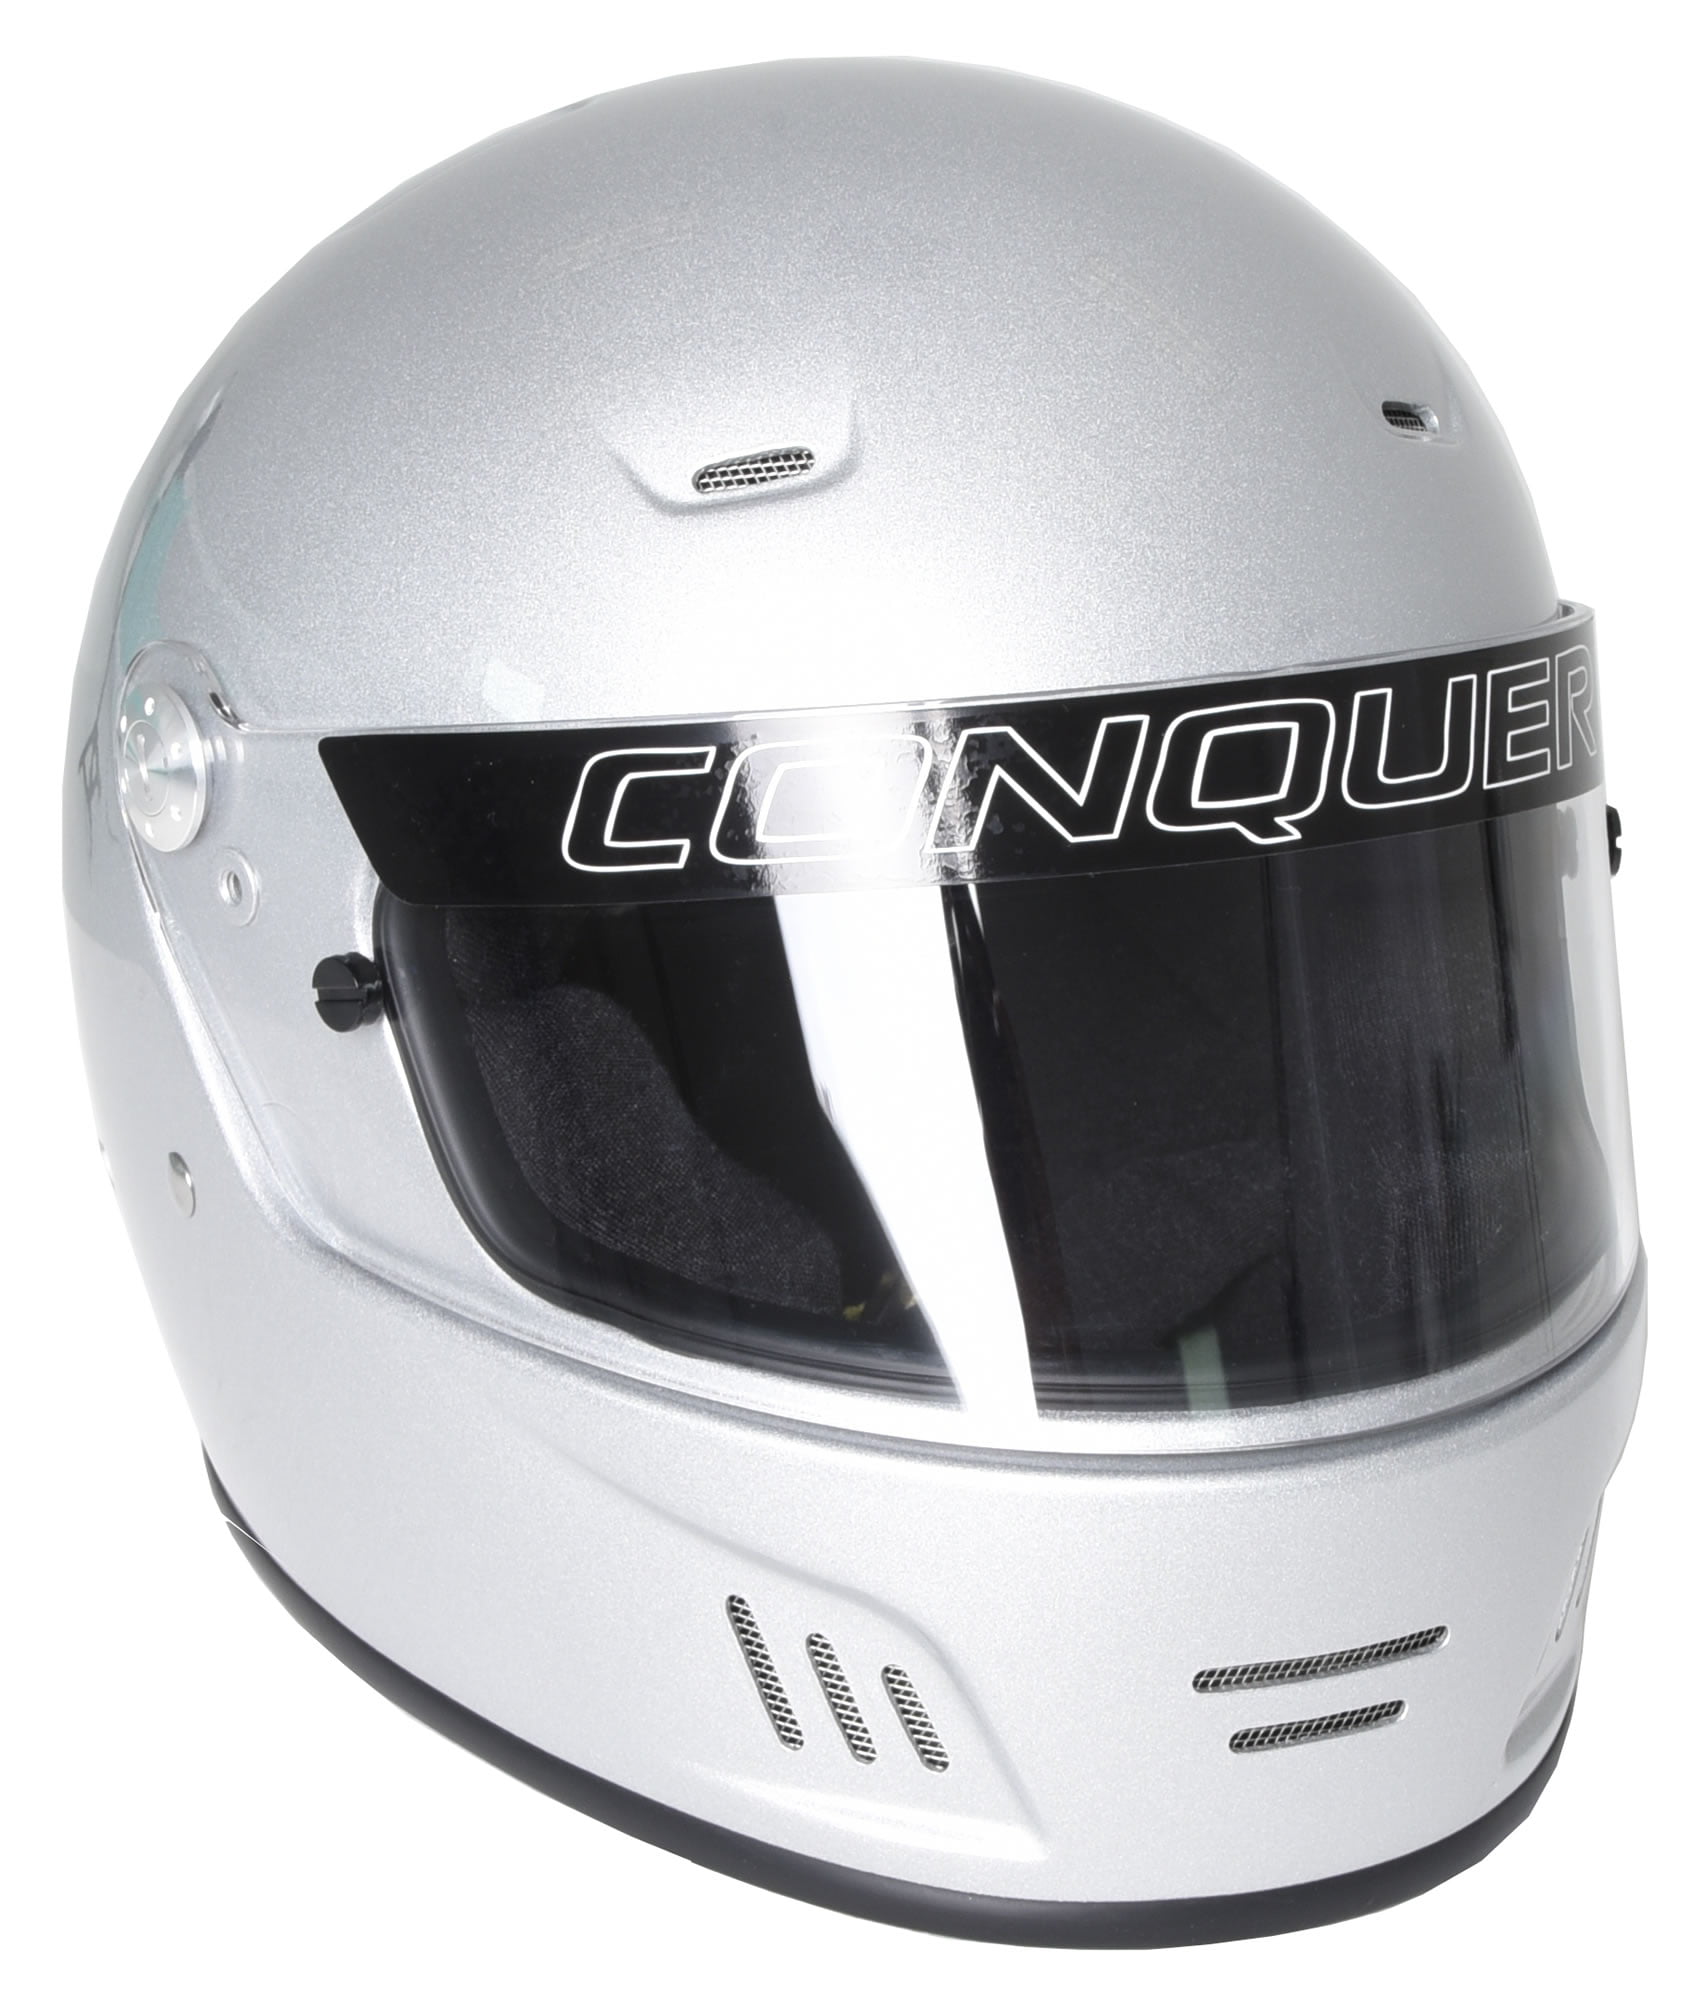 Conquer Snell SA2015 Approved Full Face Auto Racing Helmet - Walmart.com - Walmart.com